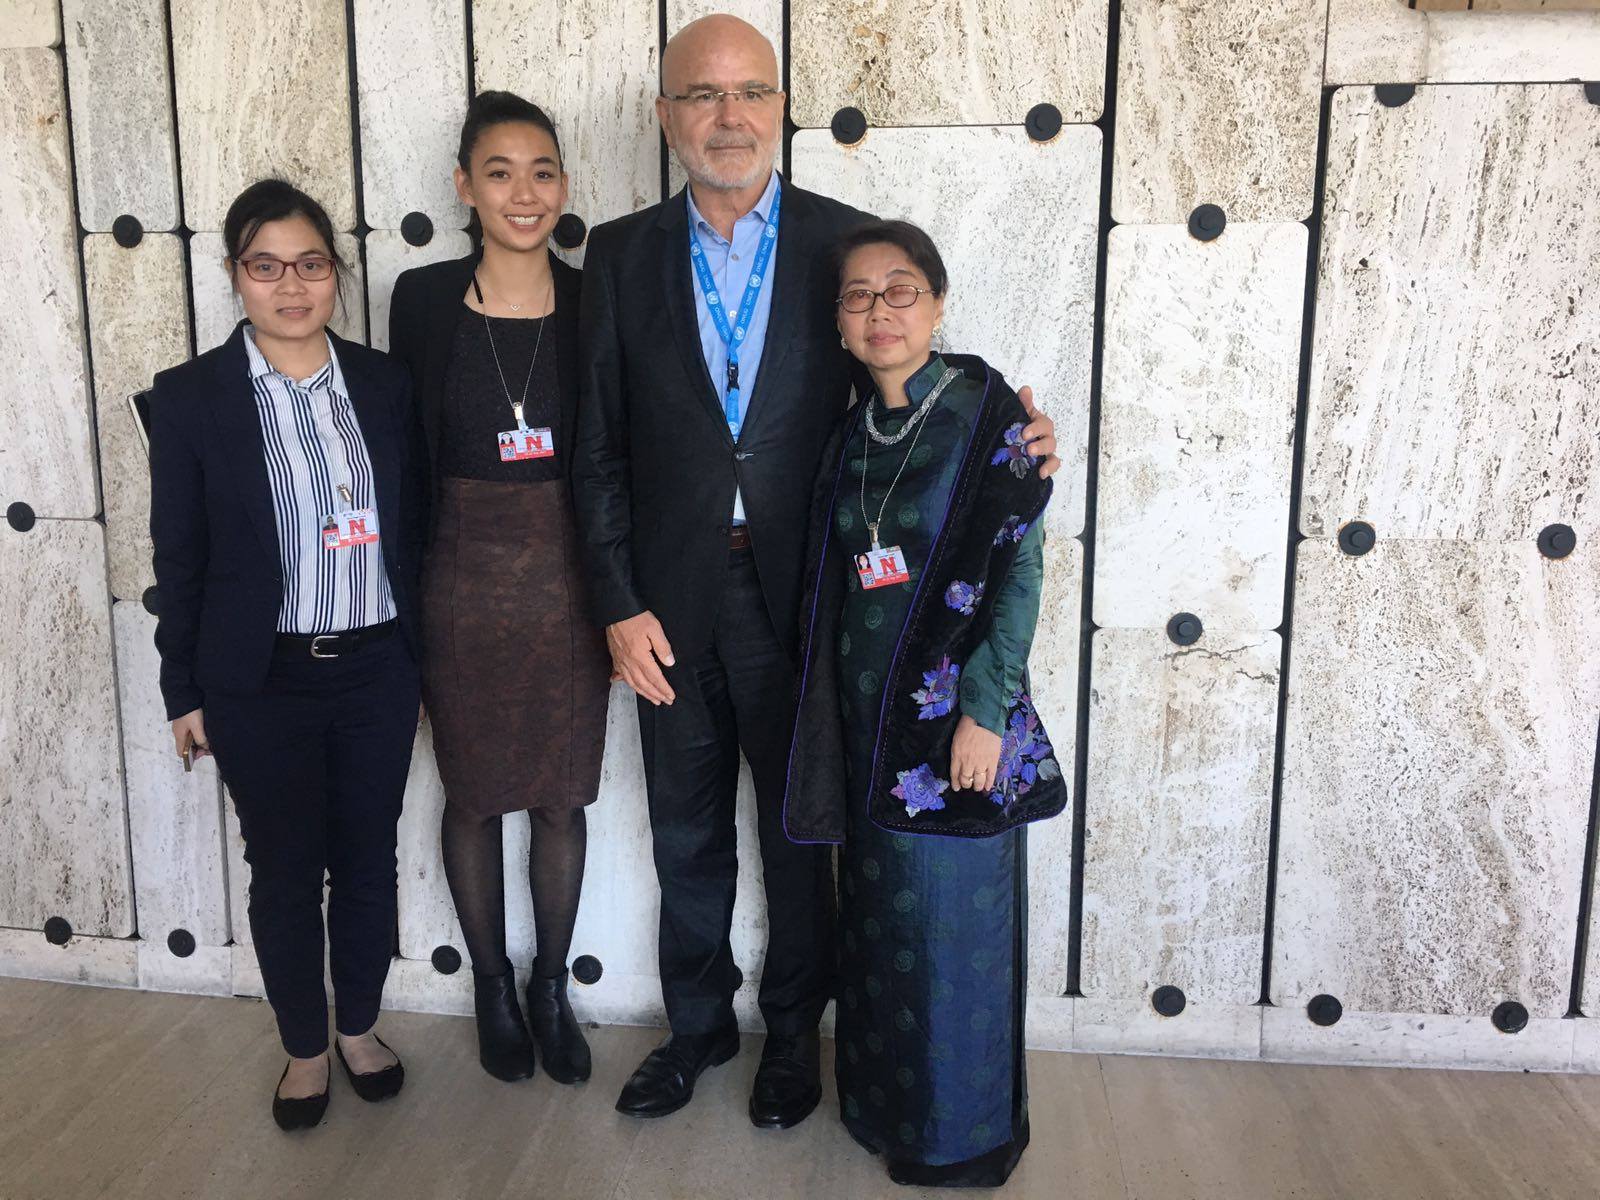 Toàn cảnh Chiến dịch Vận động Nhân quyền UPR năm 2017 - gặp gỡ với ông UN Special Rapporteur on human rights defenders, Michel Forst - Báo cáo viên đặc biệt của Liên Hiệp Quốc về Nhà hoạt động nhân quyền (4)